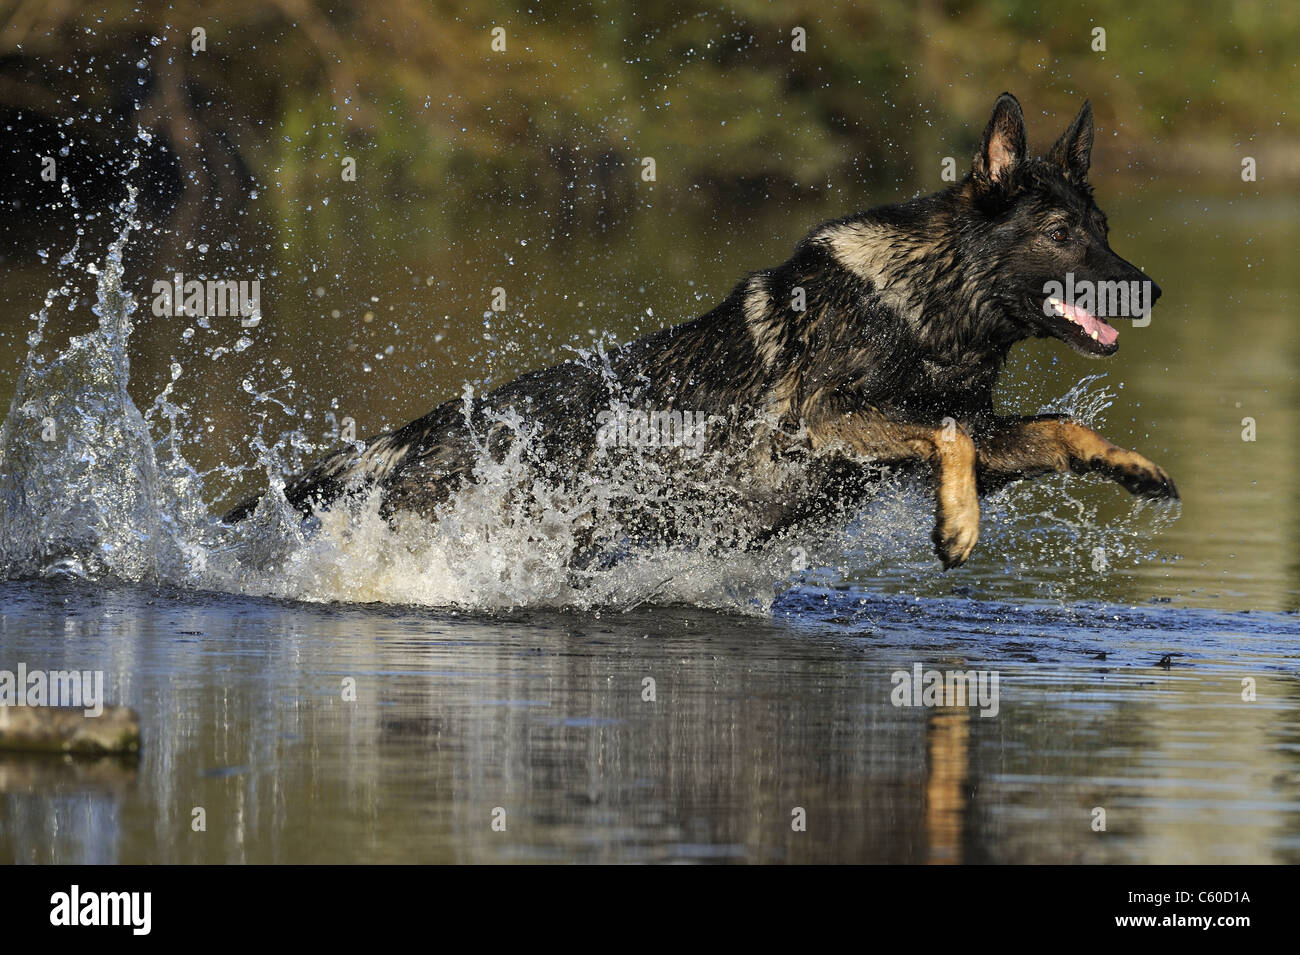 Berger allemand, l'alsacien (Canis lupus familiaris). Homme en marche dans l'eau. Banque D'Images